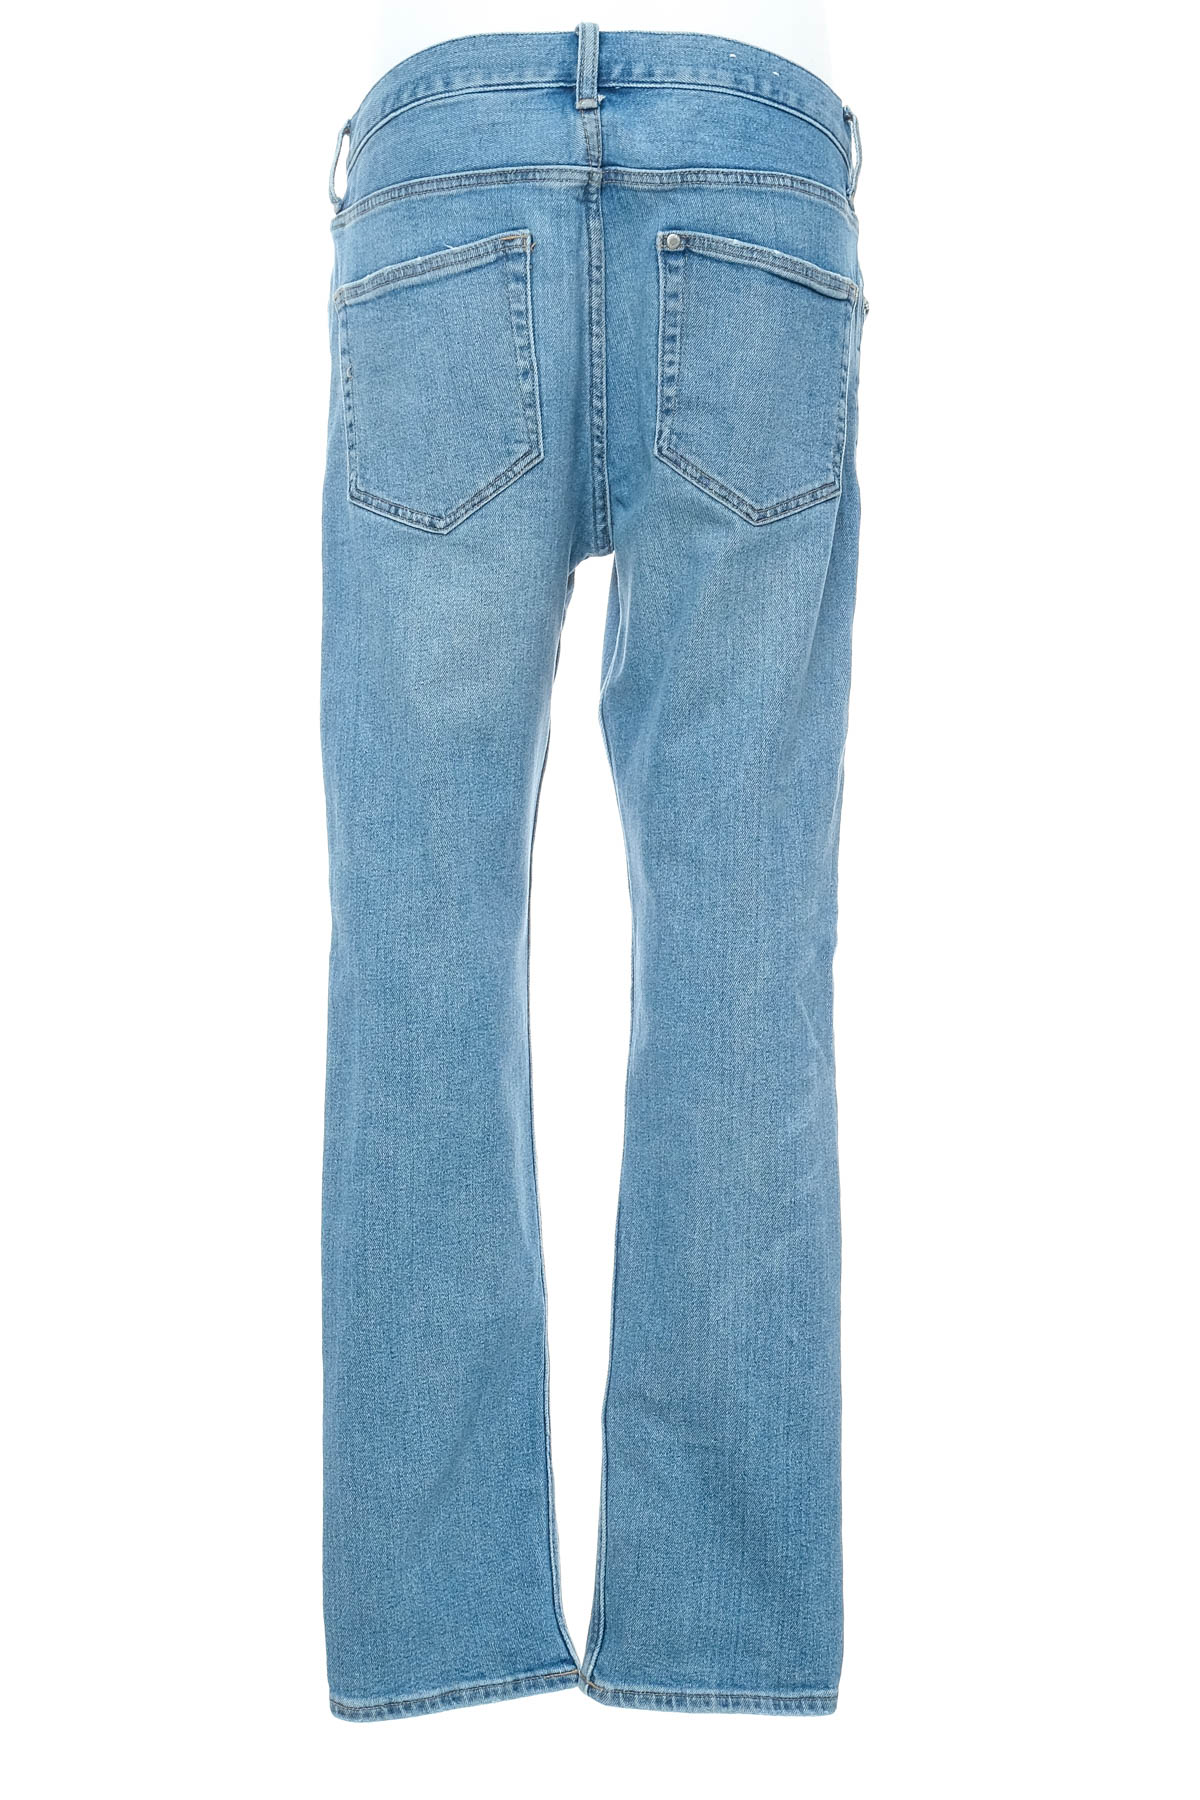 Men's jeans - H&M - 1